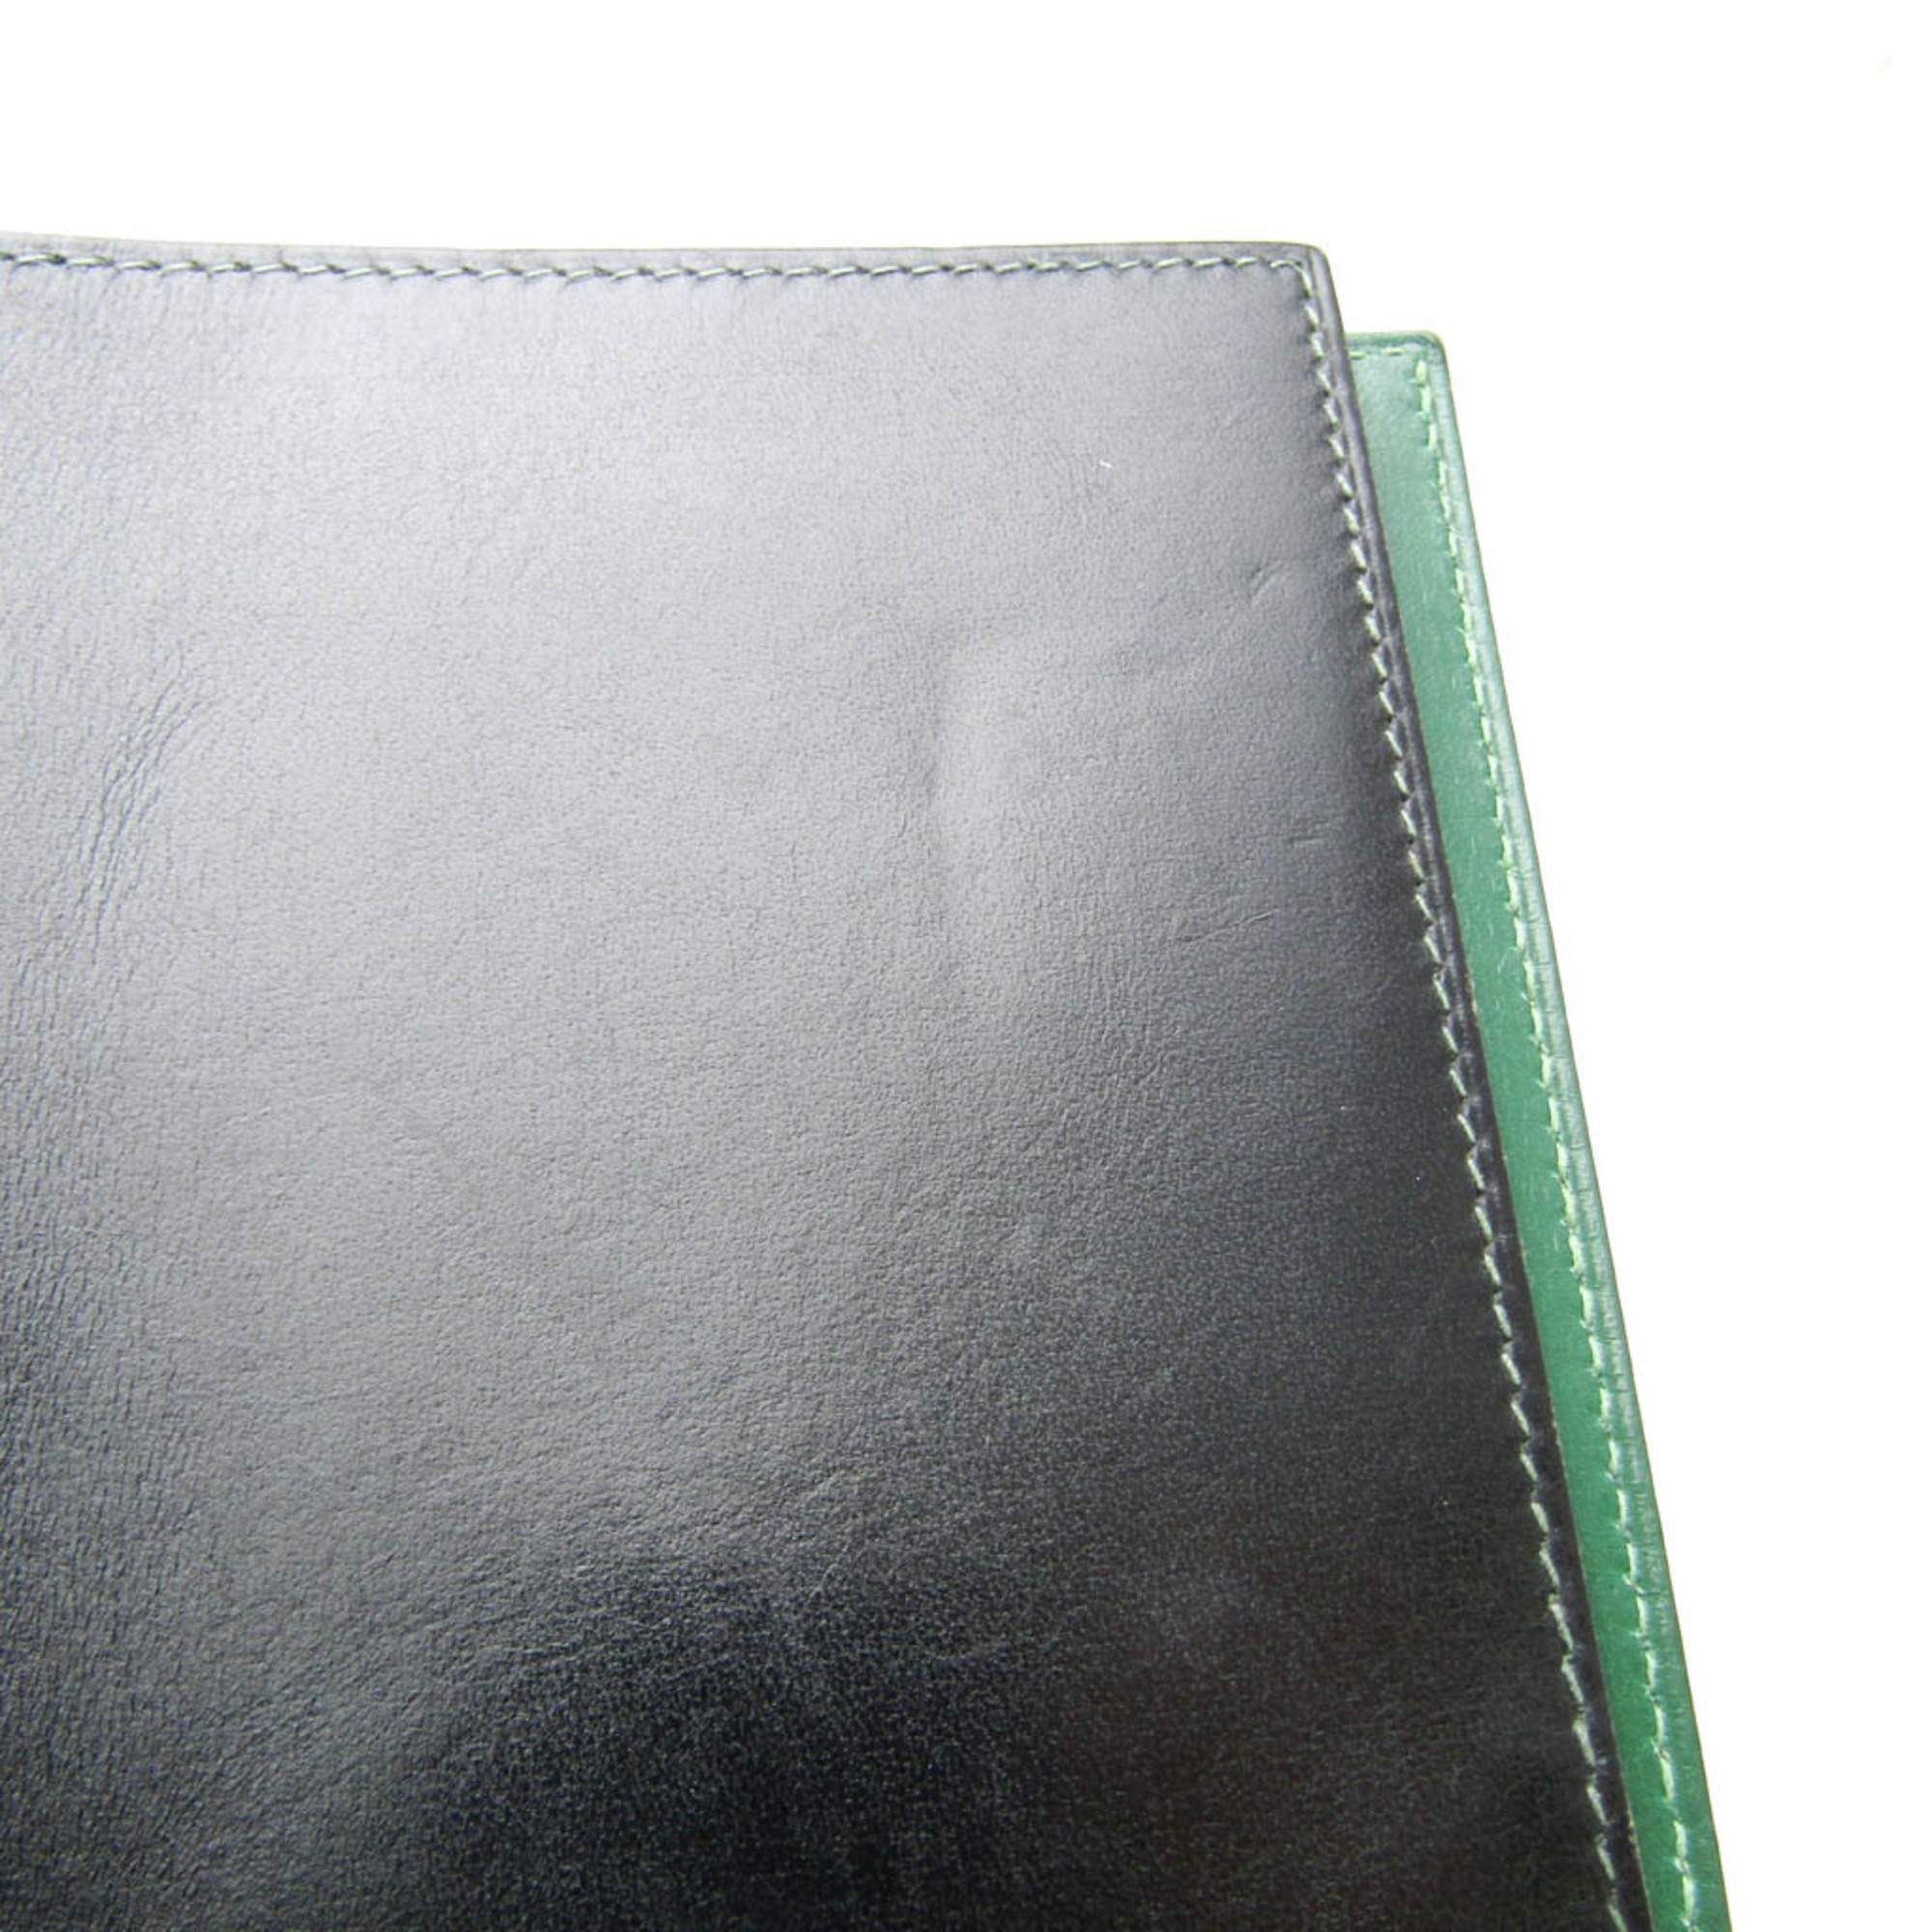 エルメス(Hermes) アジェンダ パーソナルサイズ 手帳 ブラック,グリーン ヴィジョン